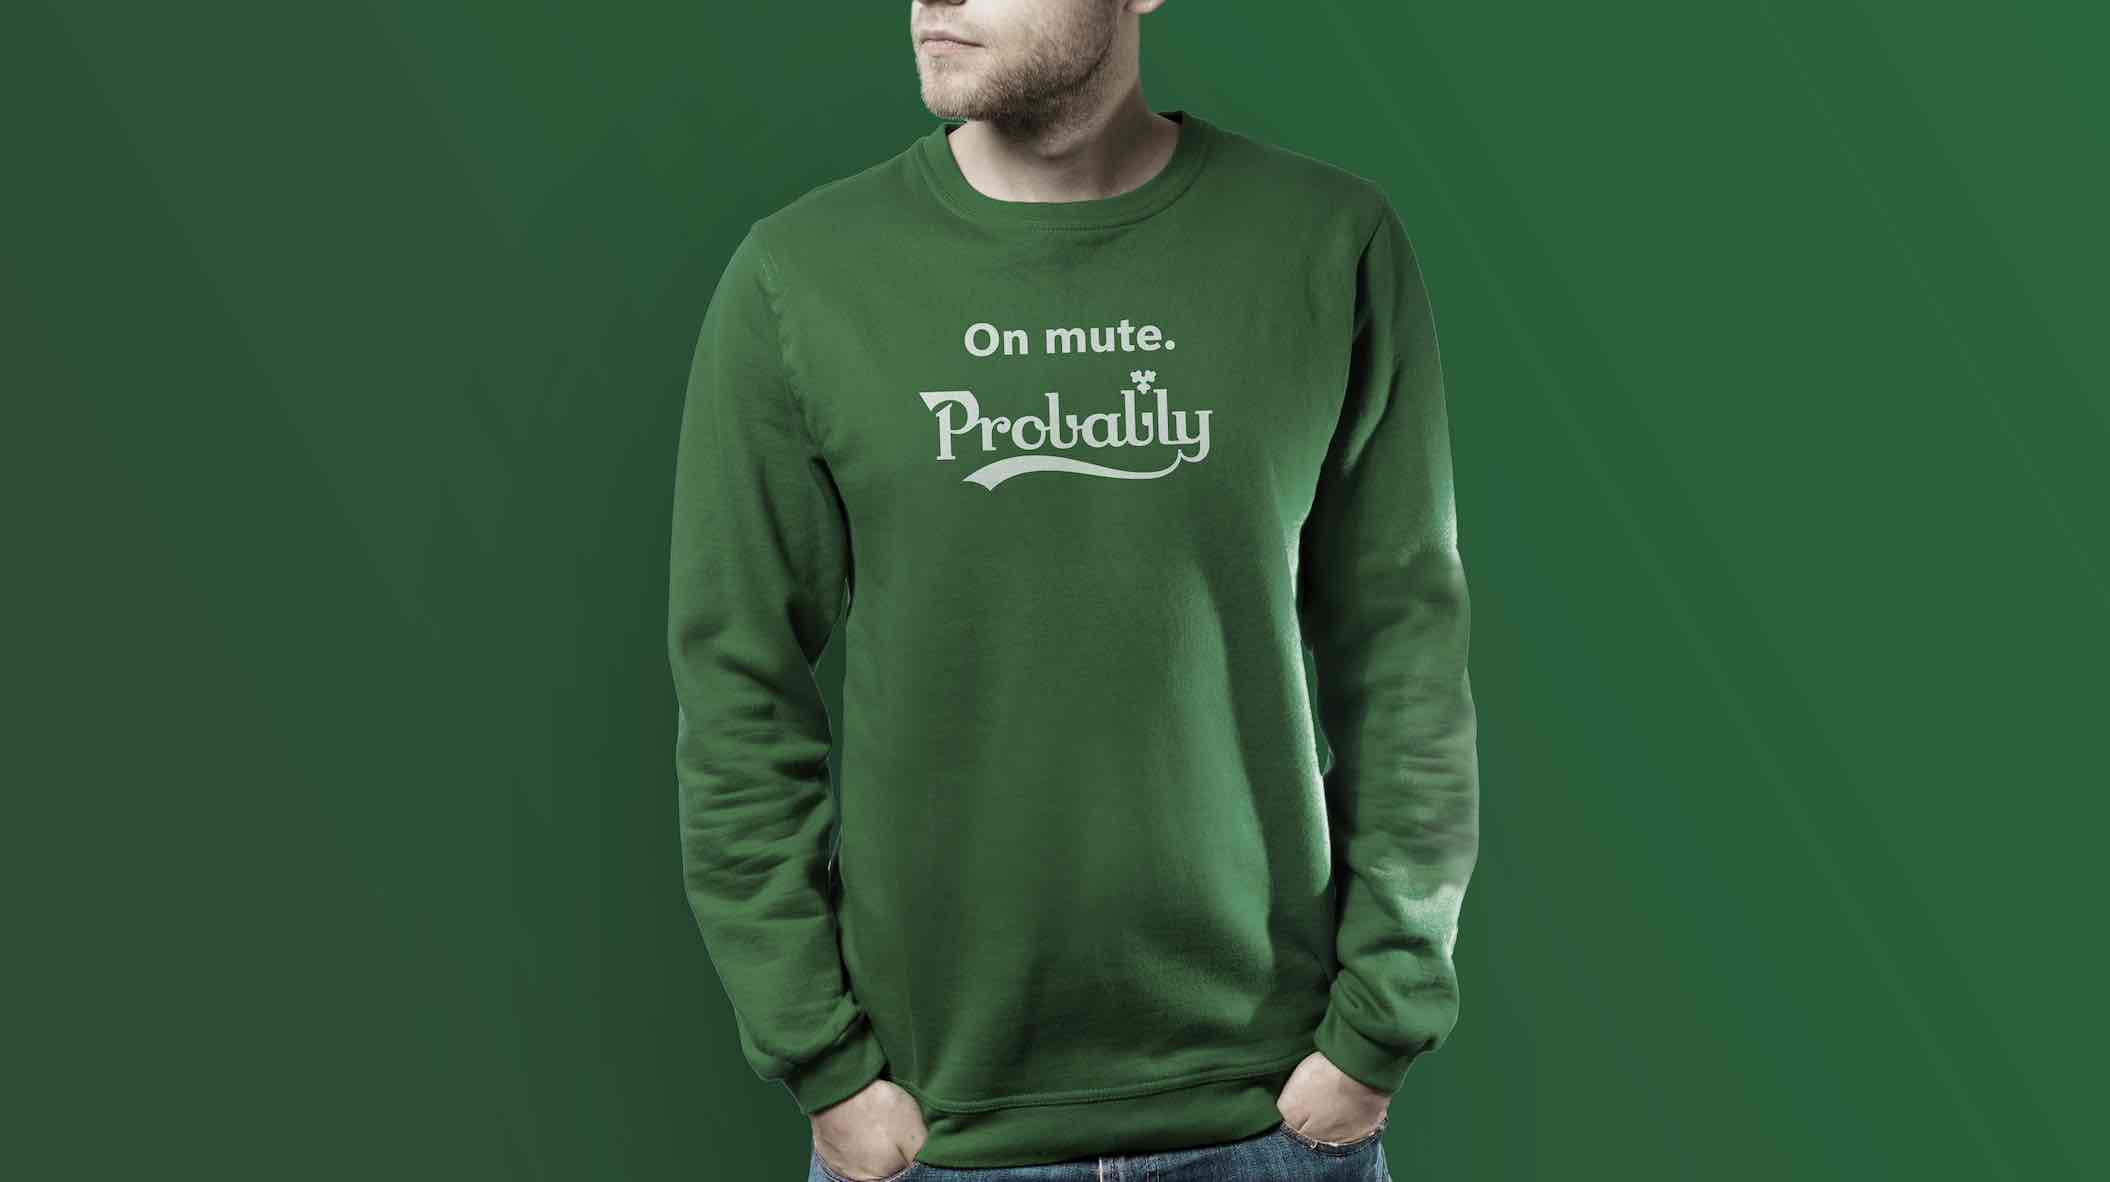 Happiness ontwerpt sweater voor Carlsberg